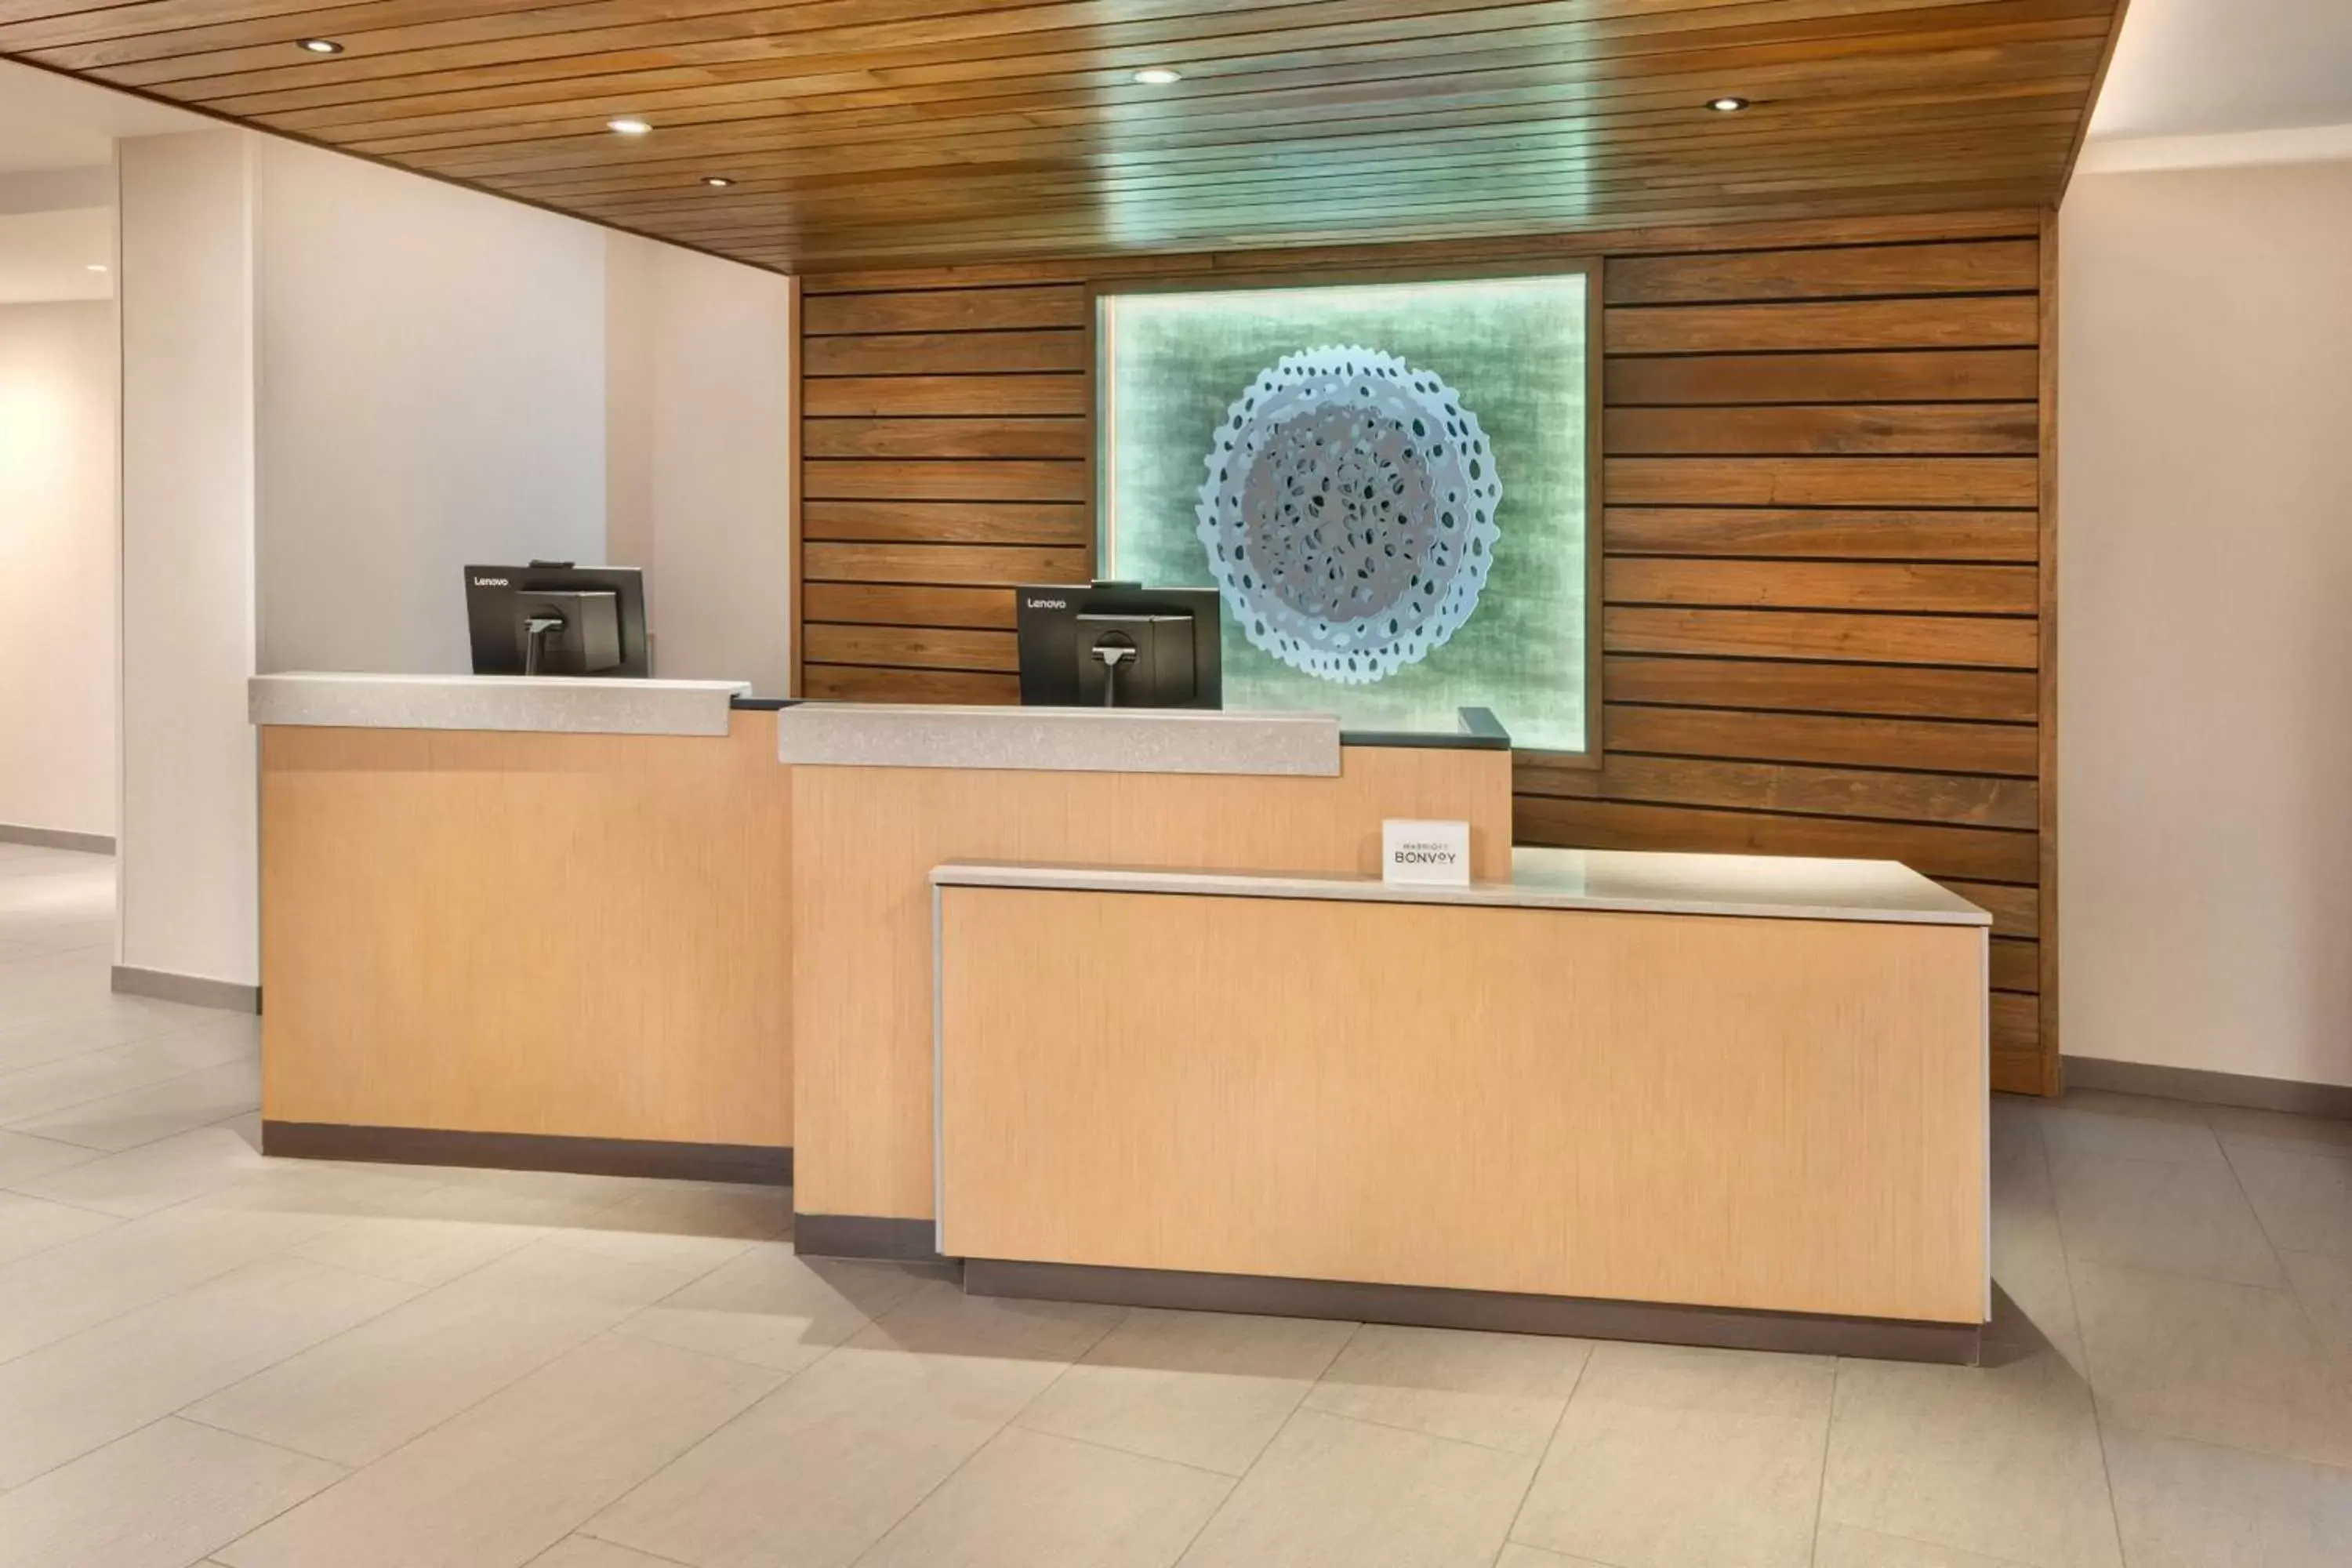 Lobby or reception, Lobby/Reception in Fairfield Inn & Suites Santee